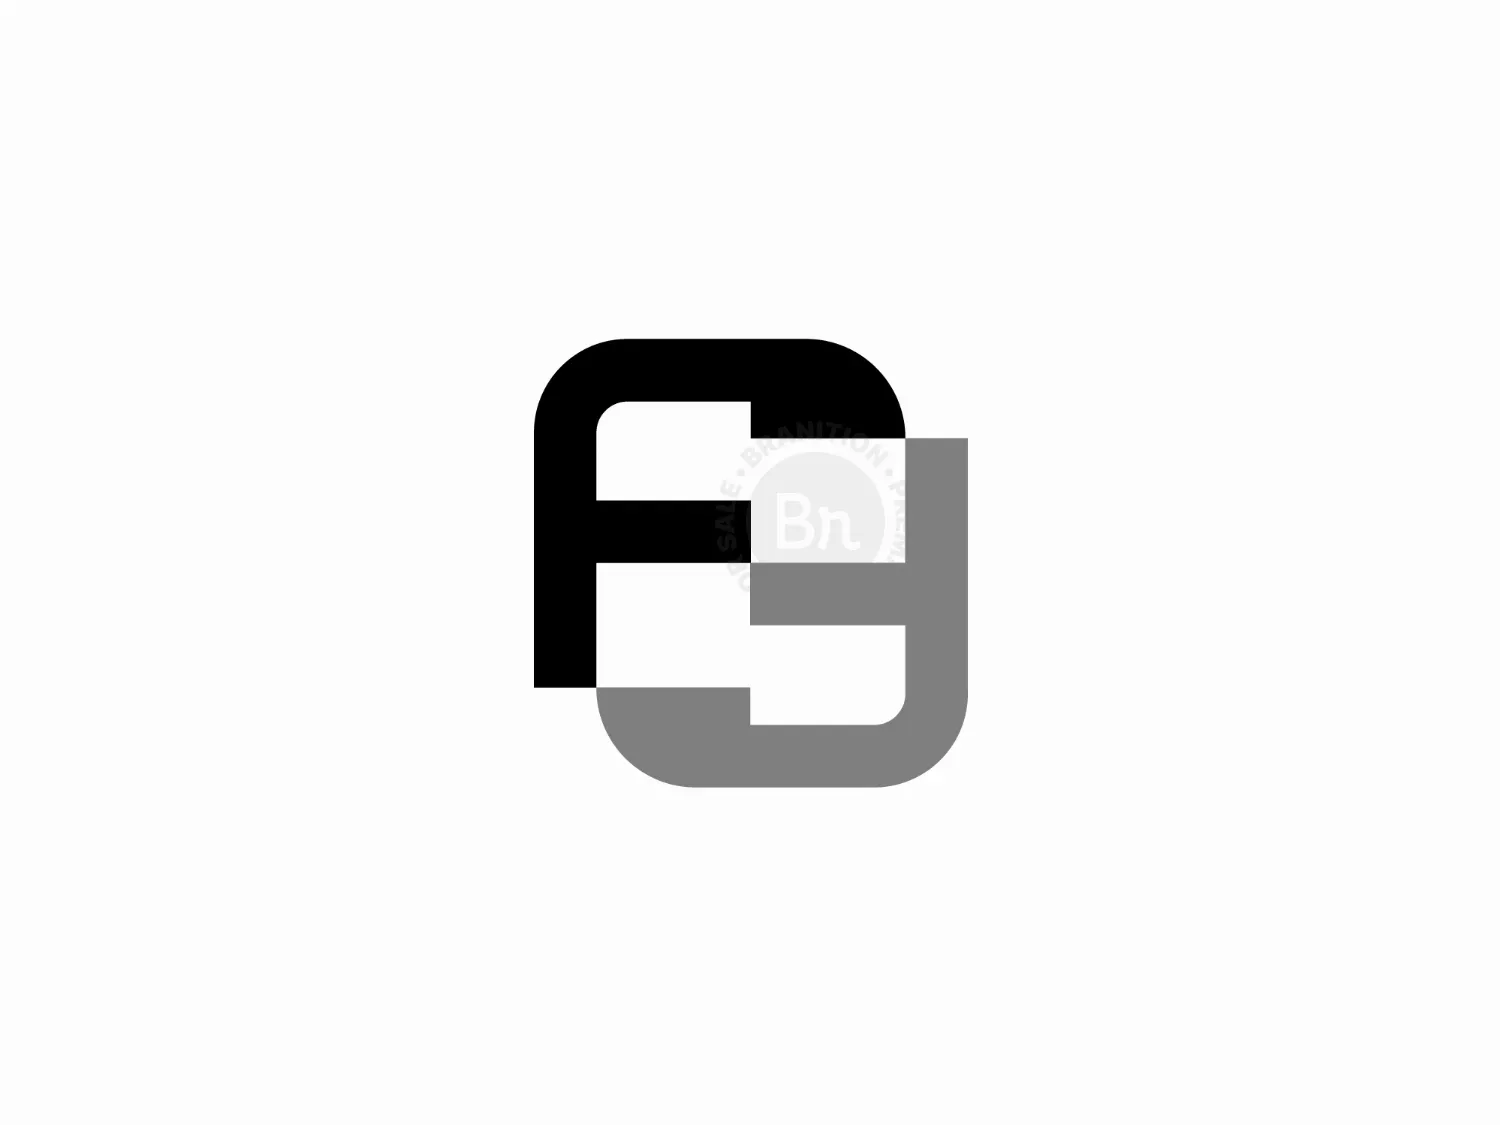 FF Or FT Logo